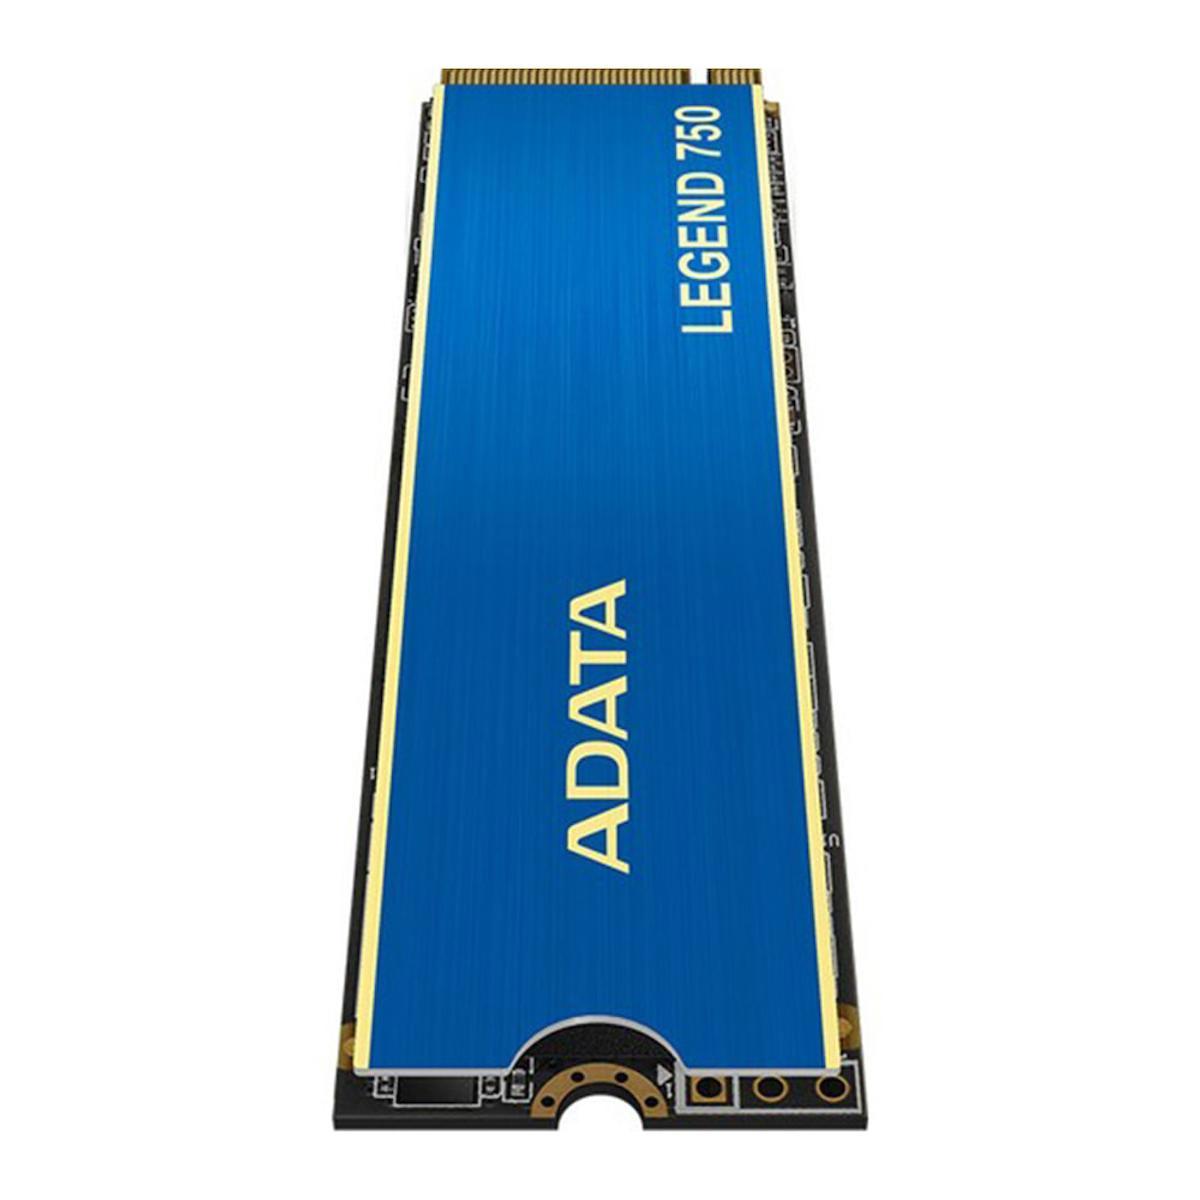 Adata Legend 750 PCIe Gen 3x4 500 GB M2 2280 SSD